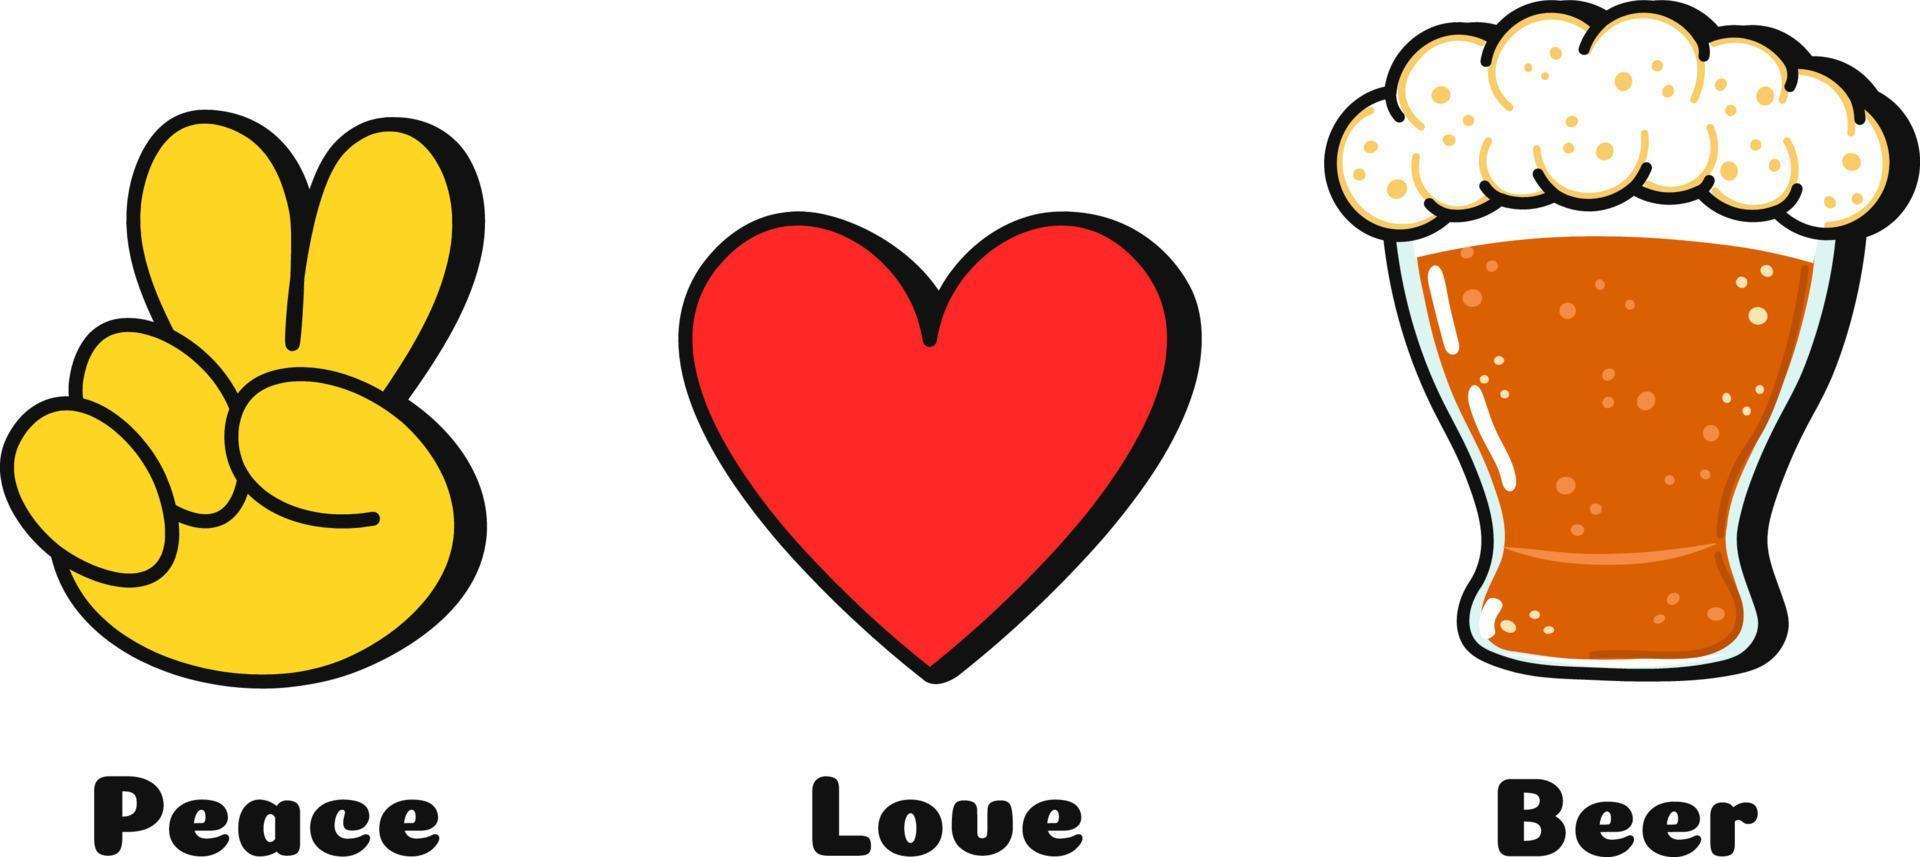 paz, amor, impressão de conceito de paz para t-shirt.vector cartoon doodle linha ilustração gráfica design de logotipo. sinal de paz, coração, impressão de paz para pôster, camiseta, conceito de logotipo vetor